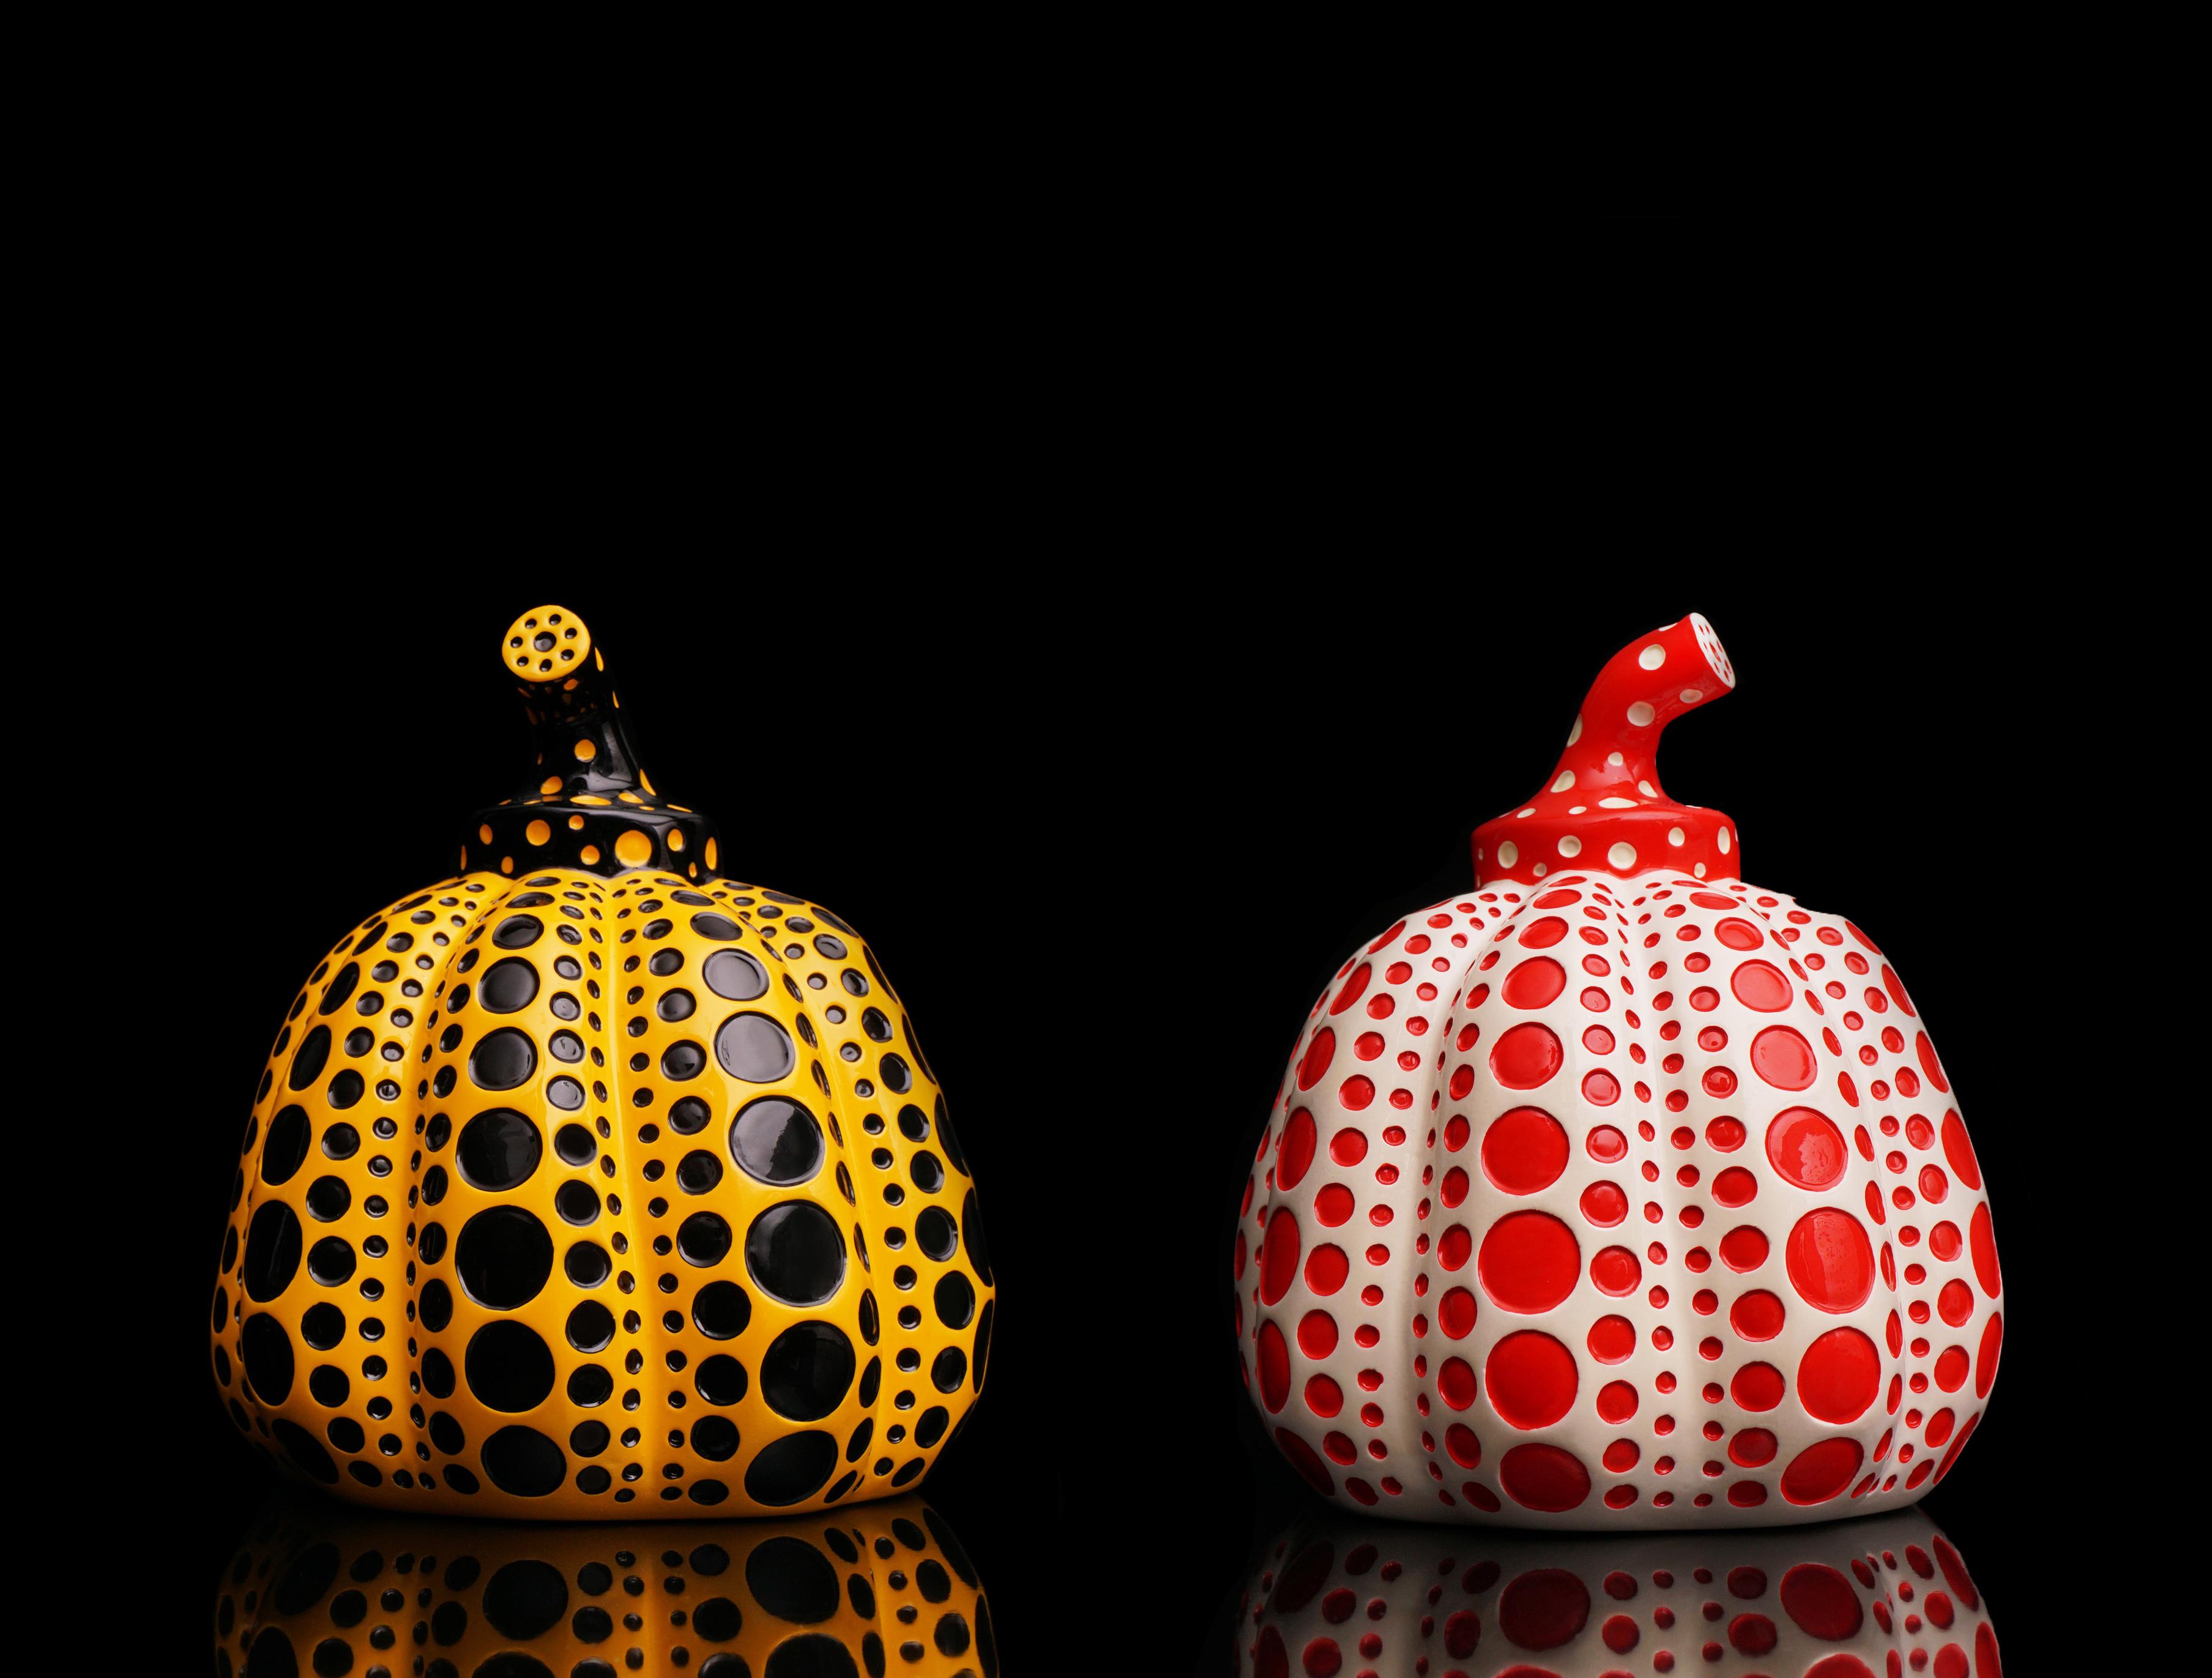 L'ensemble de deux sculptures "Pumpkin" est un objet d'art à collectionner en résine laquée à pois de l'artiste contemporain légendaire Yayoi Kusama. Publié par Benesse Holdings, Inc, Naoshima, Japon. Créée en 2016, la série de citrouilles à pois